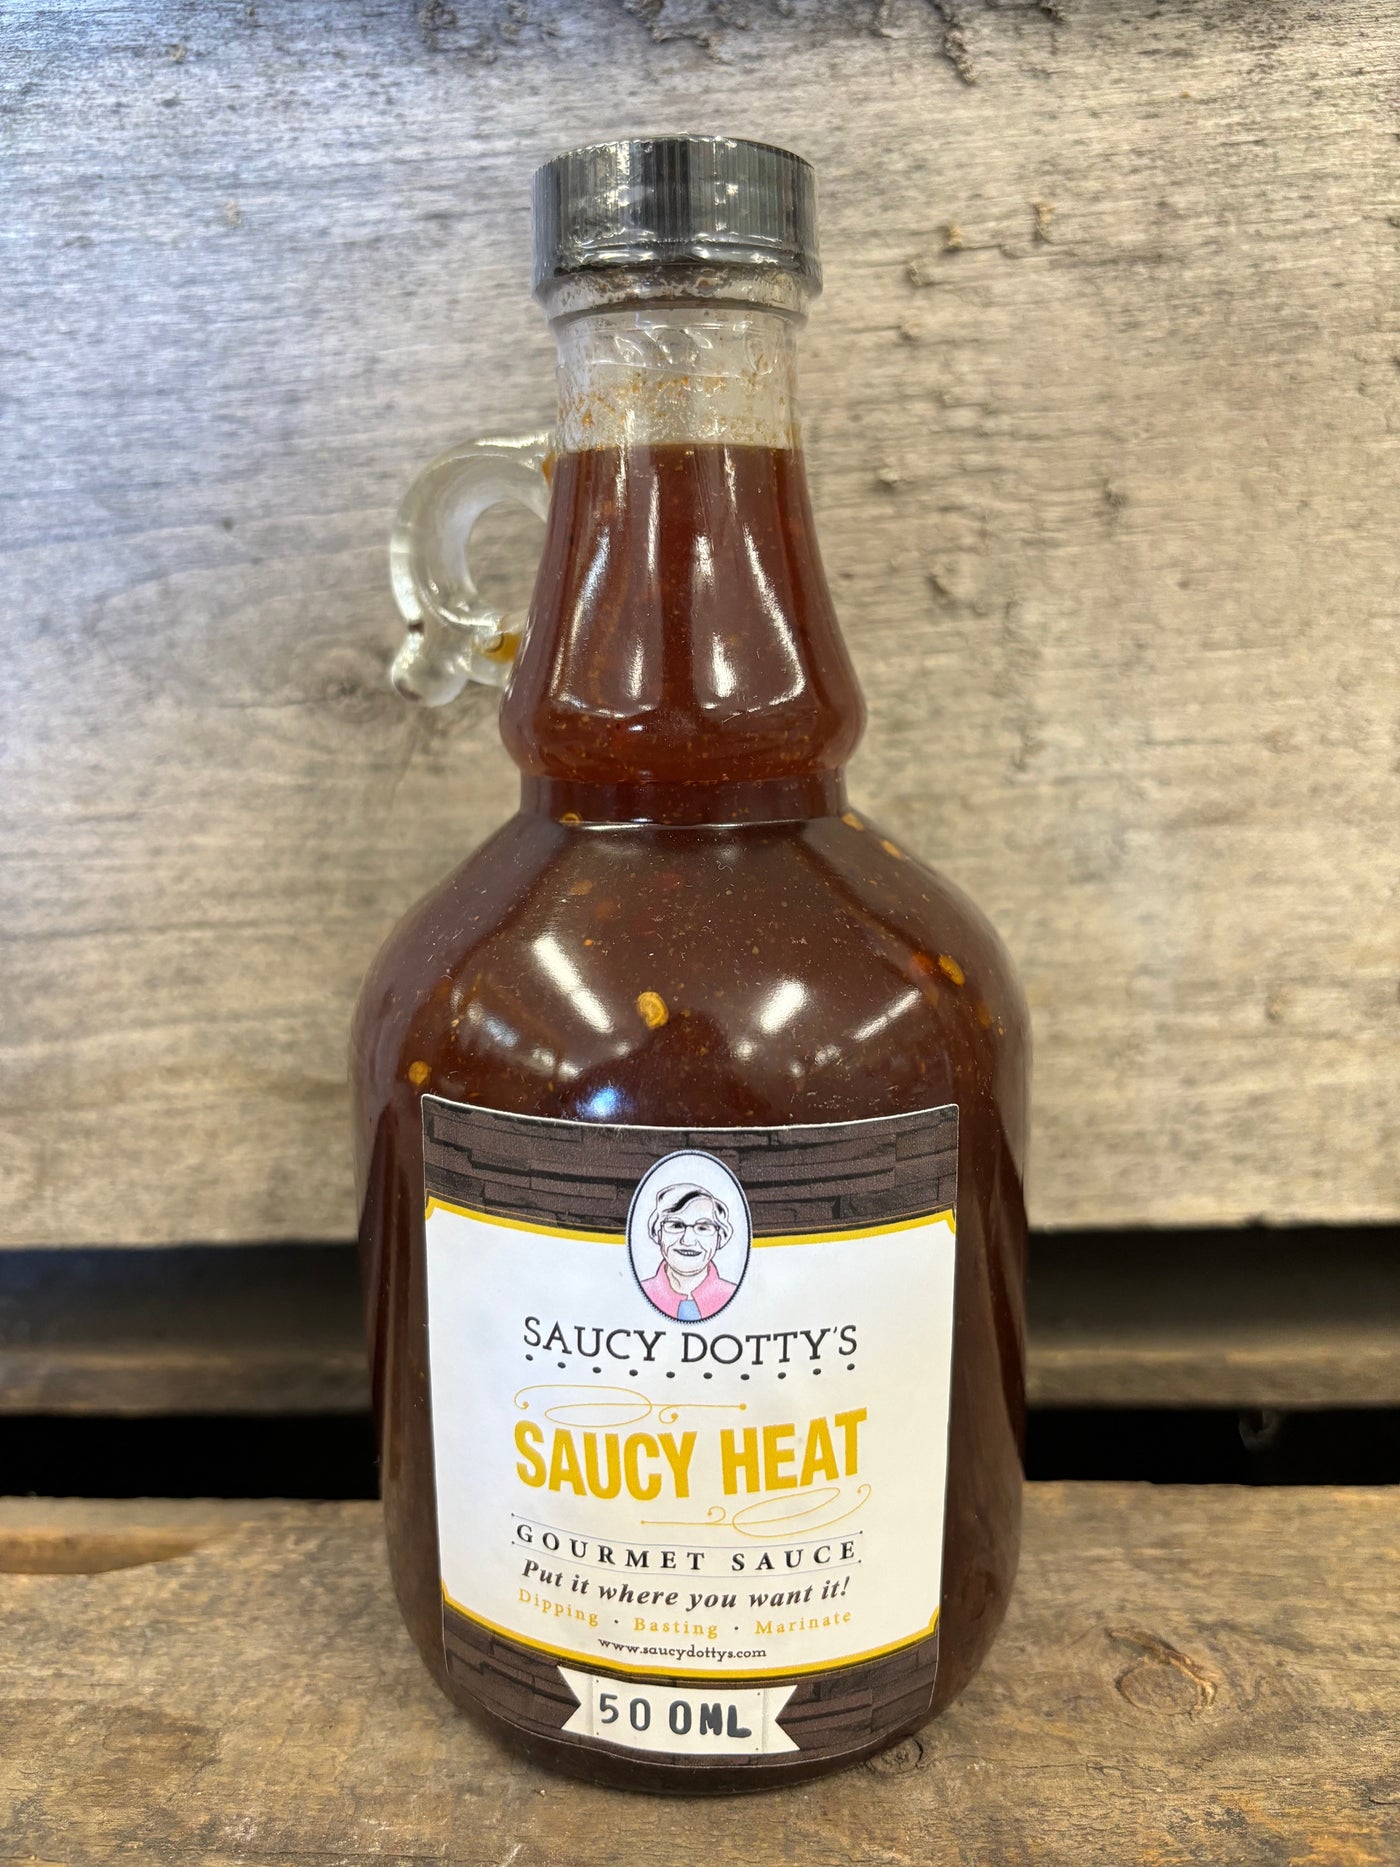 Saucy Dotty's "Saucy Heat"